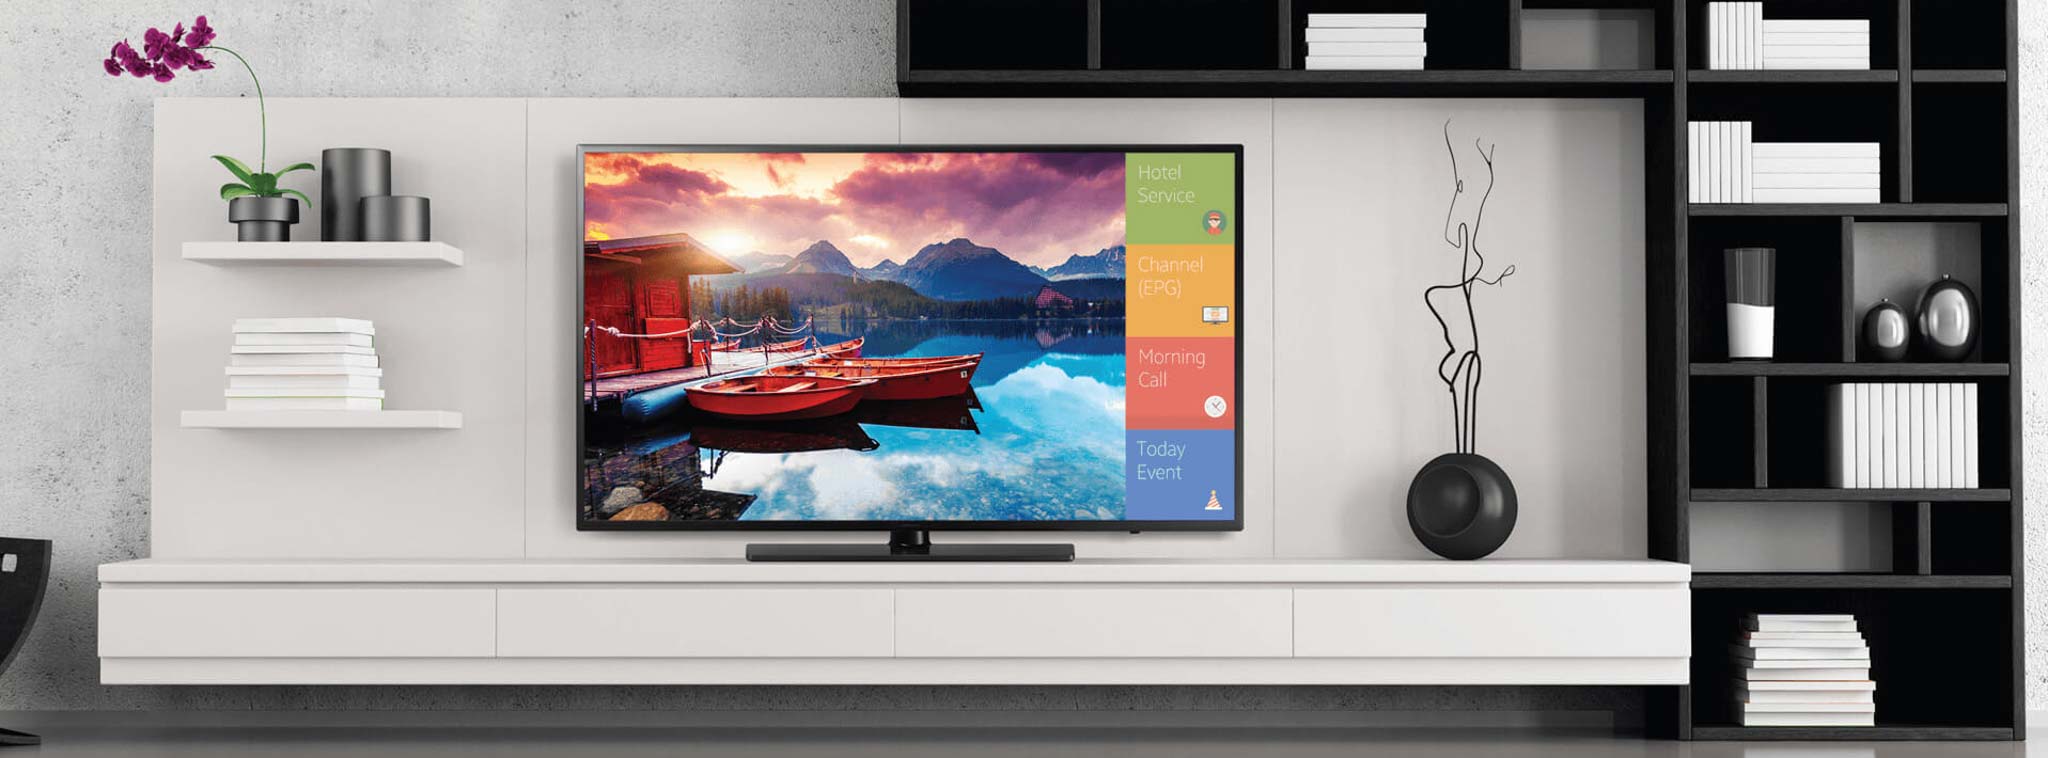 Samsung sẽ bán khoảng 100.000 TV sử dụng tấm nền LG trong năm 2018